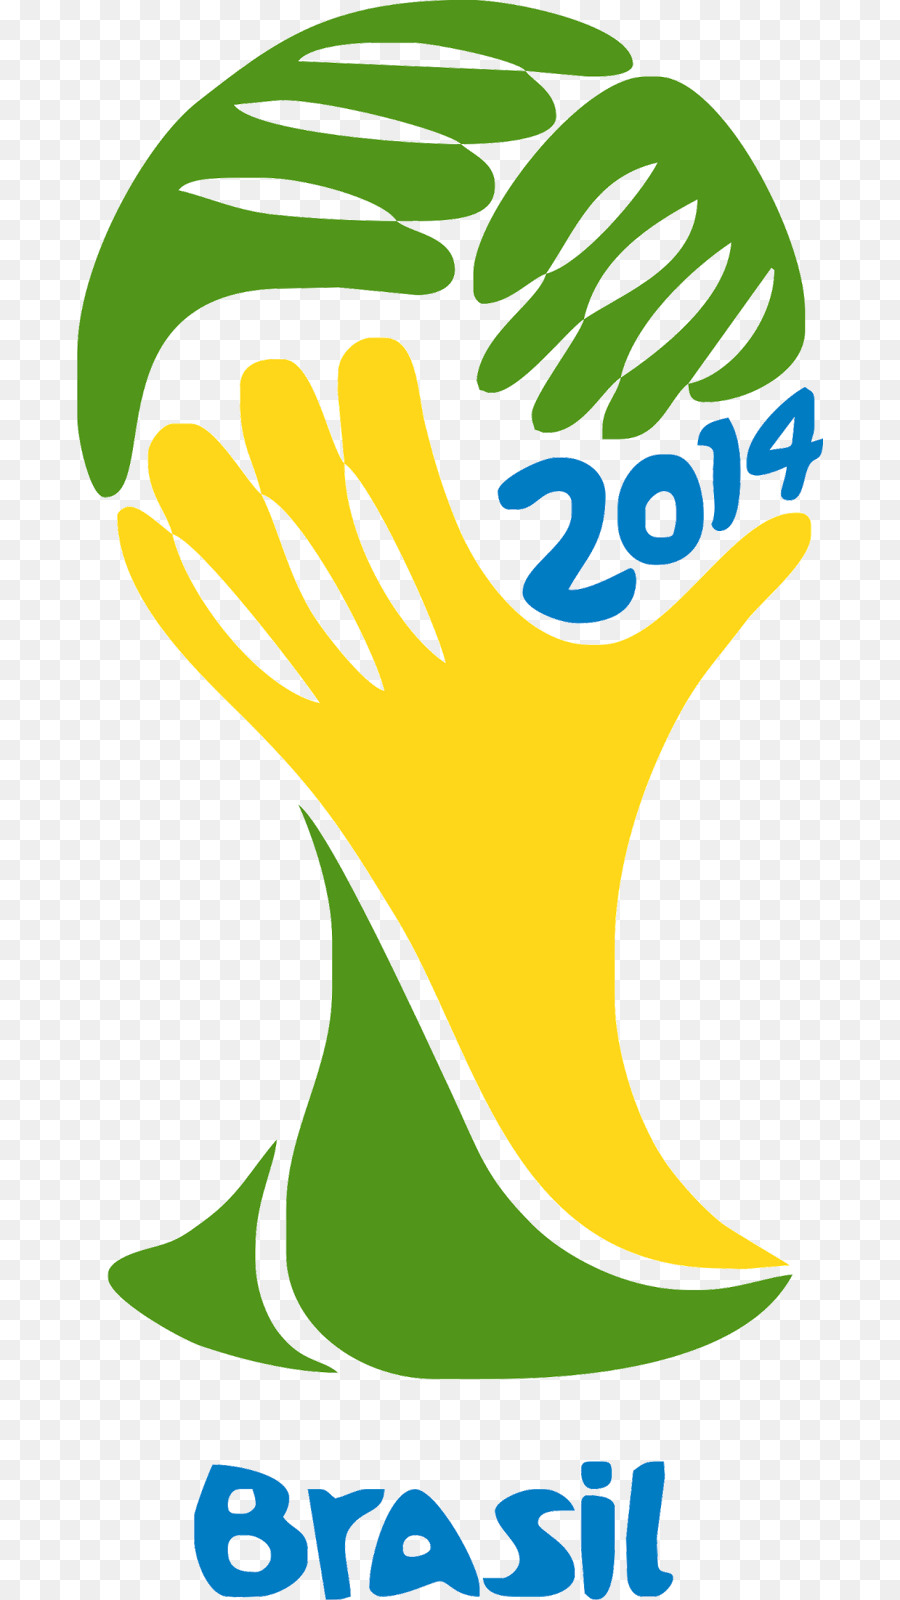 FIFA Fussball-Weltmeisterschaft 2014 FIFA Fussball-Weltmeisterschaft 2010 Brasilien Fussball-Nationalmannschaft 2018 - Brasilien Welternährung